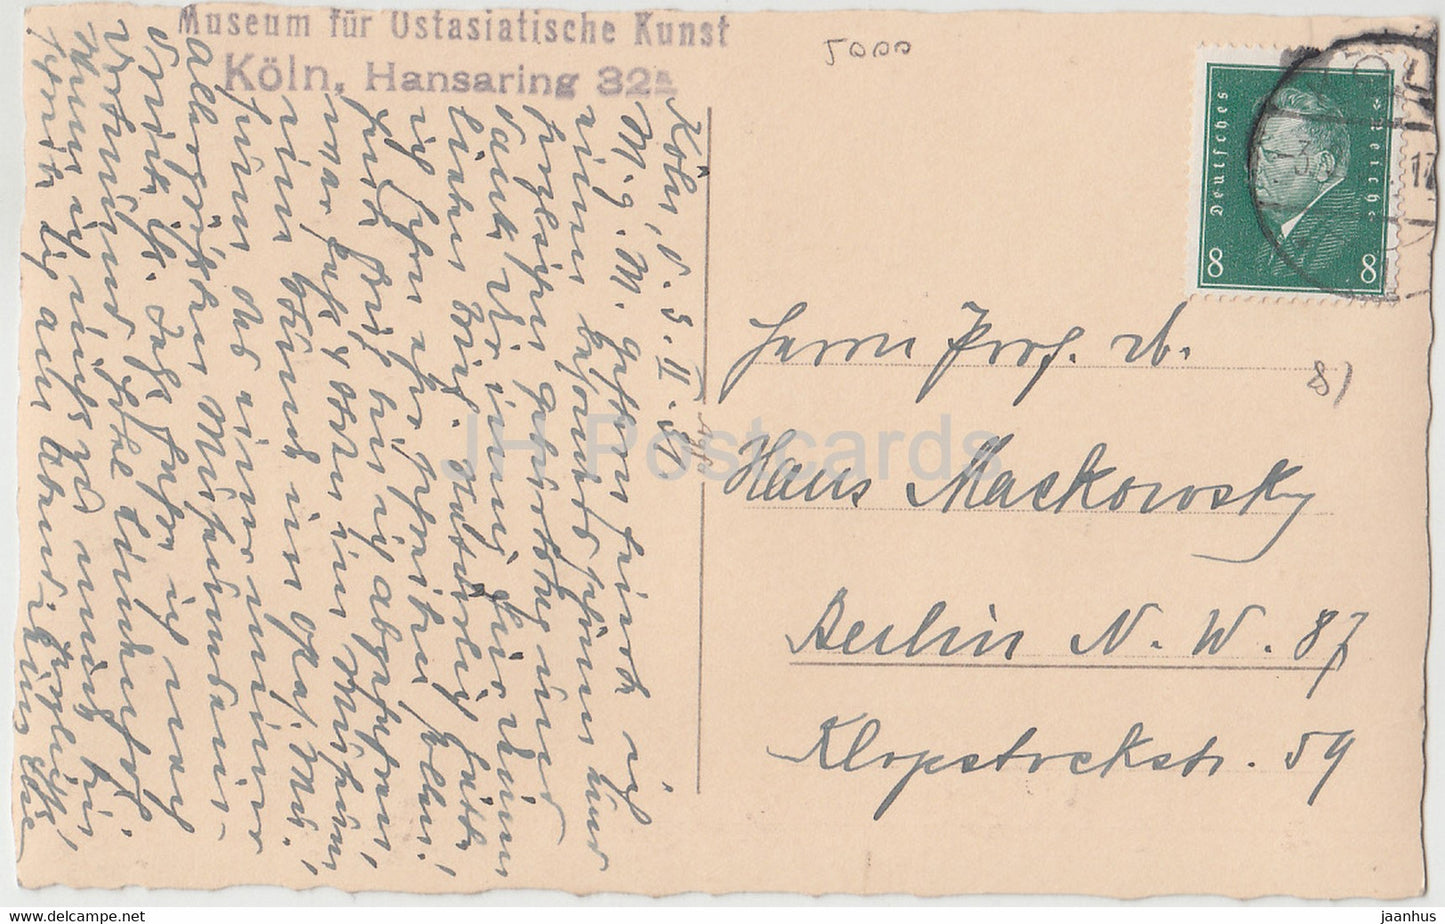 Museum für Ostasiatische Kunst – Köln – Vögel – Gemälde – alte Postkarte – 1931 – Deutschland – gebraucht